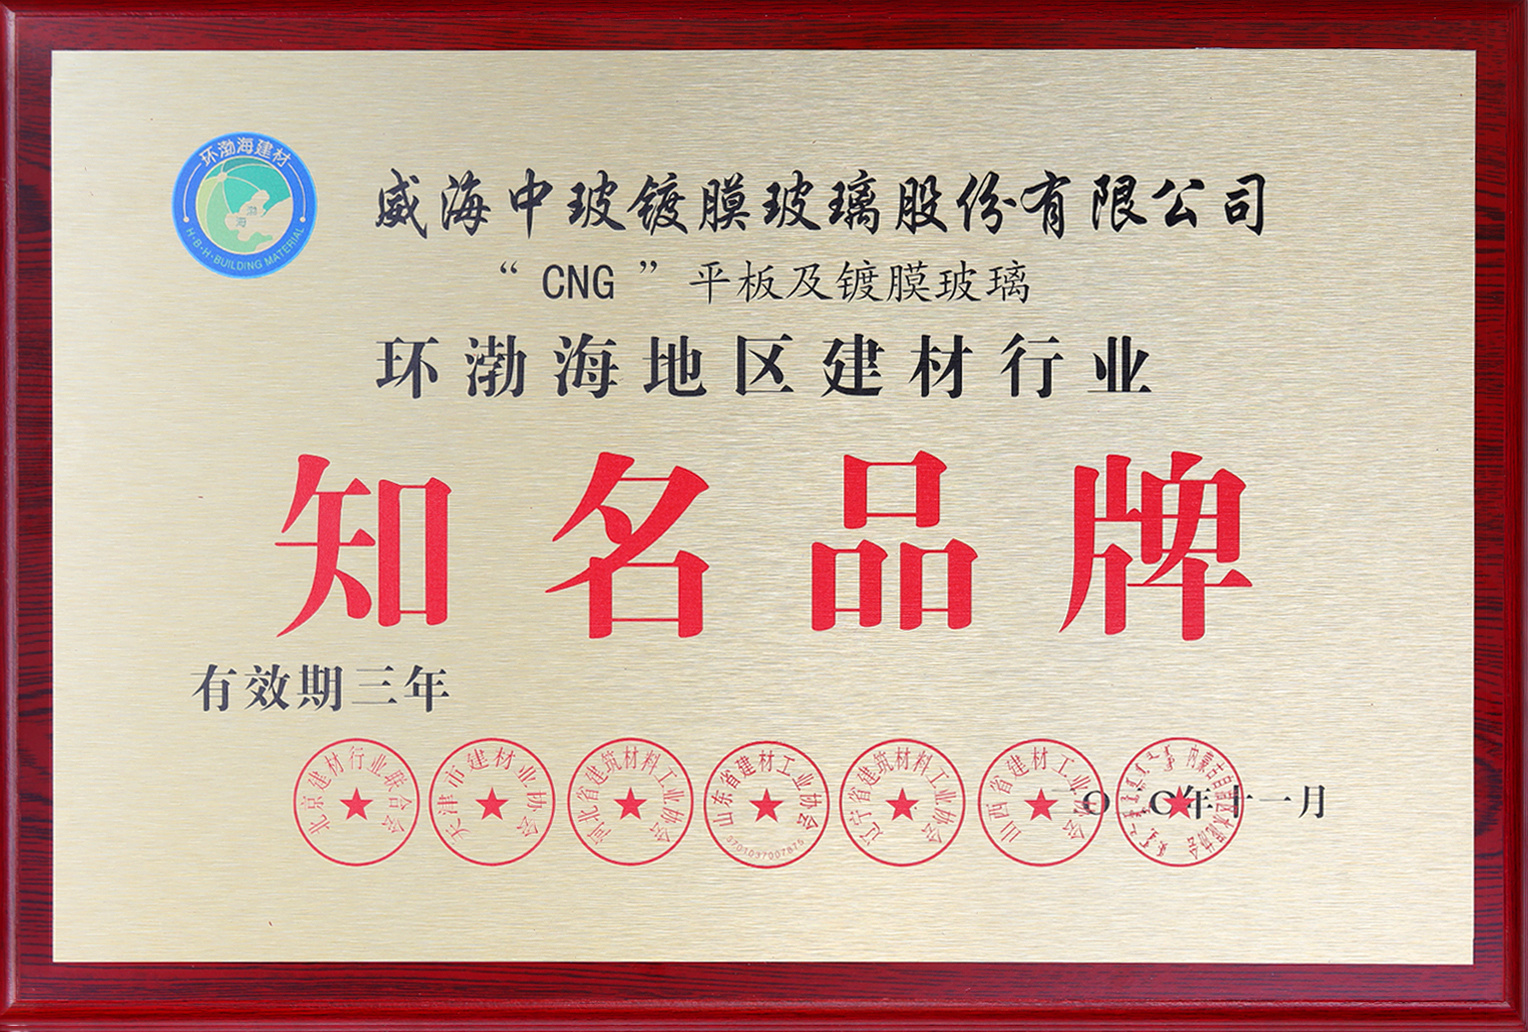 2020年11月环渤海地区建材行业知名品牌